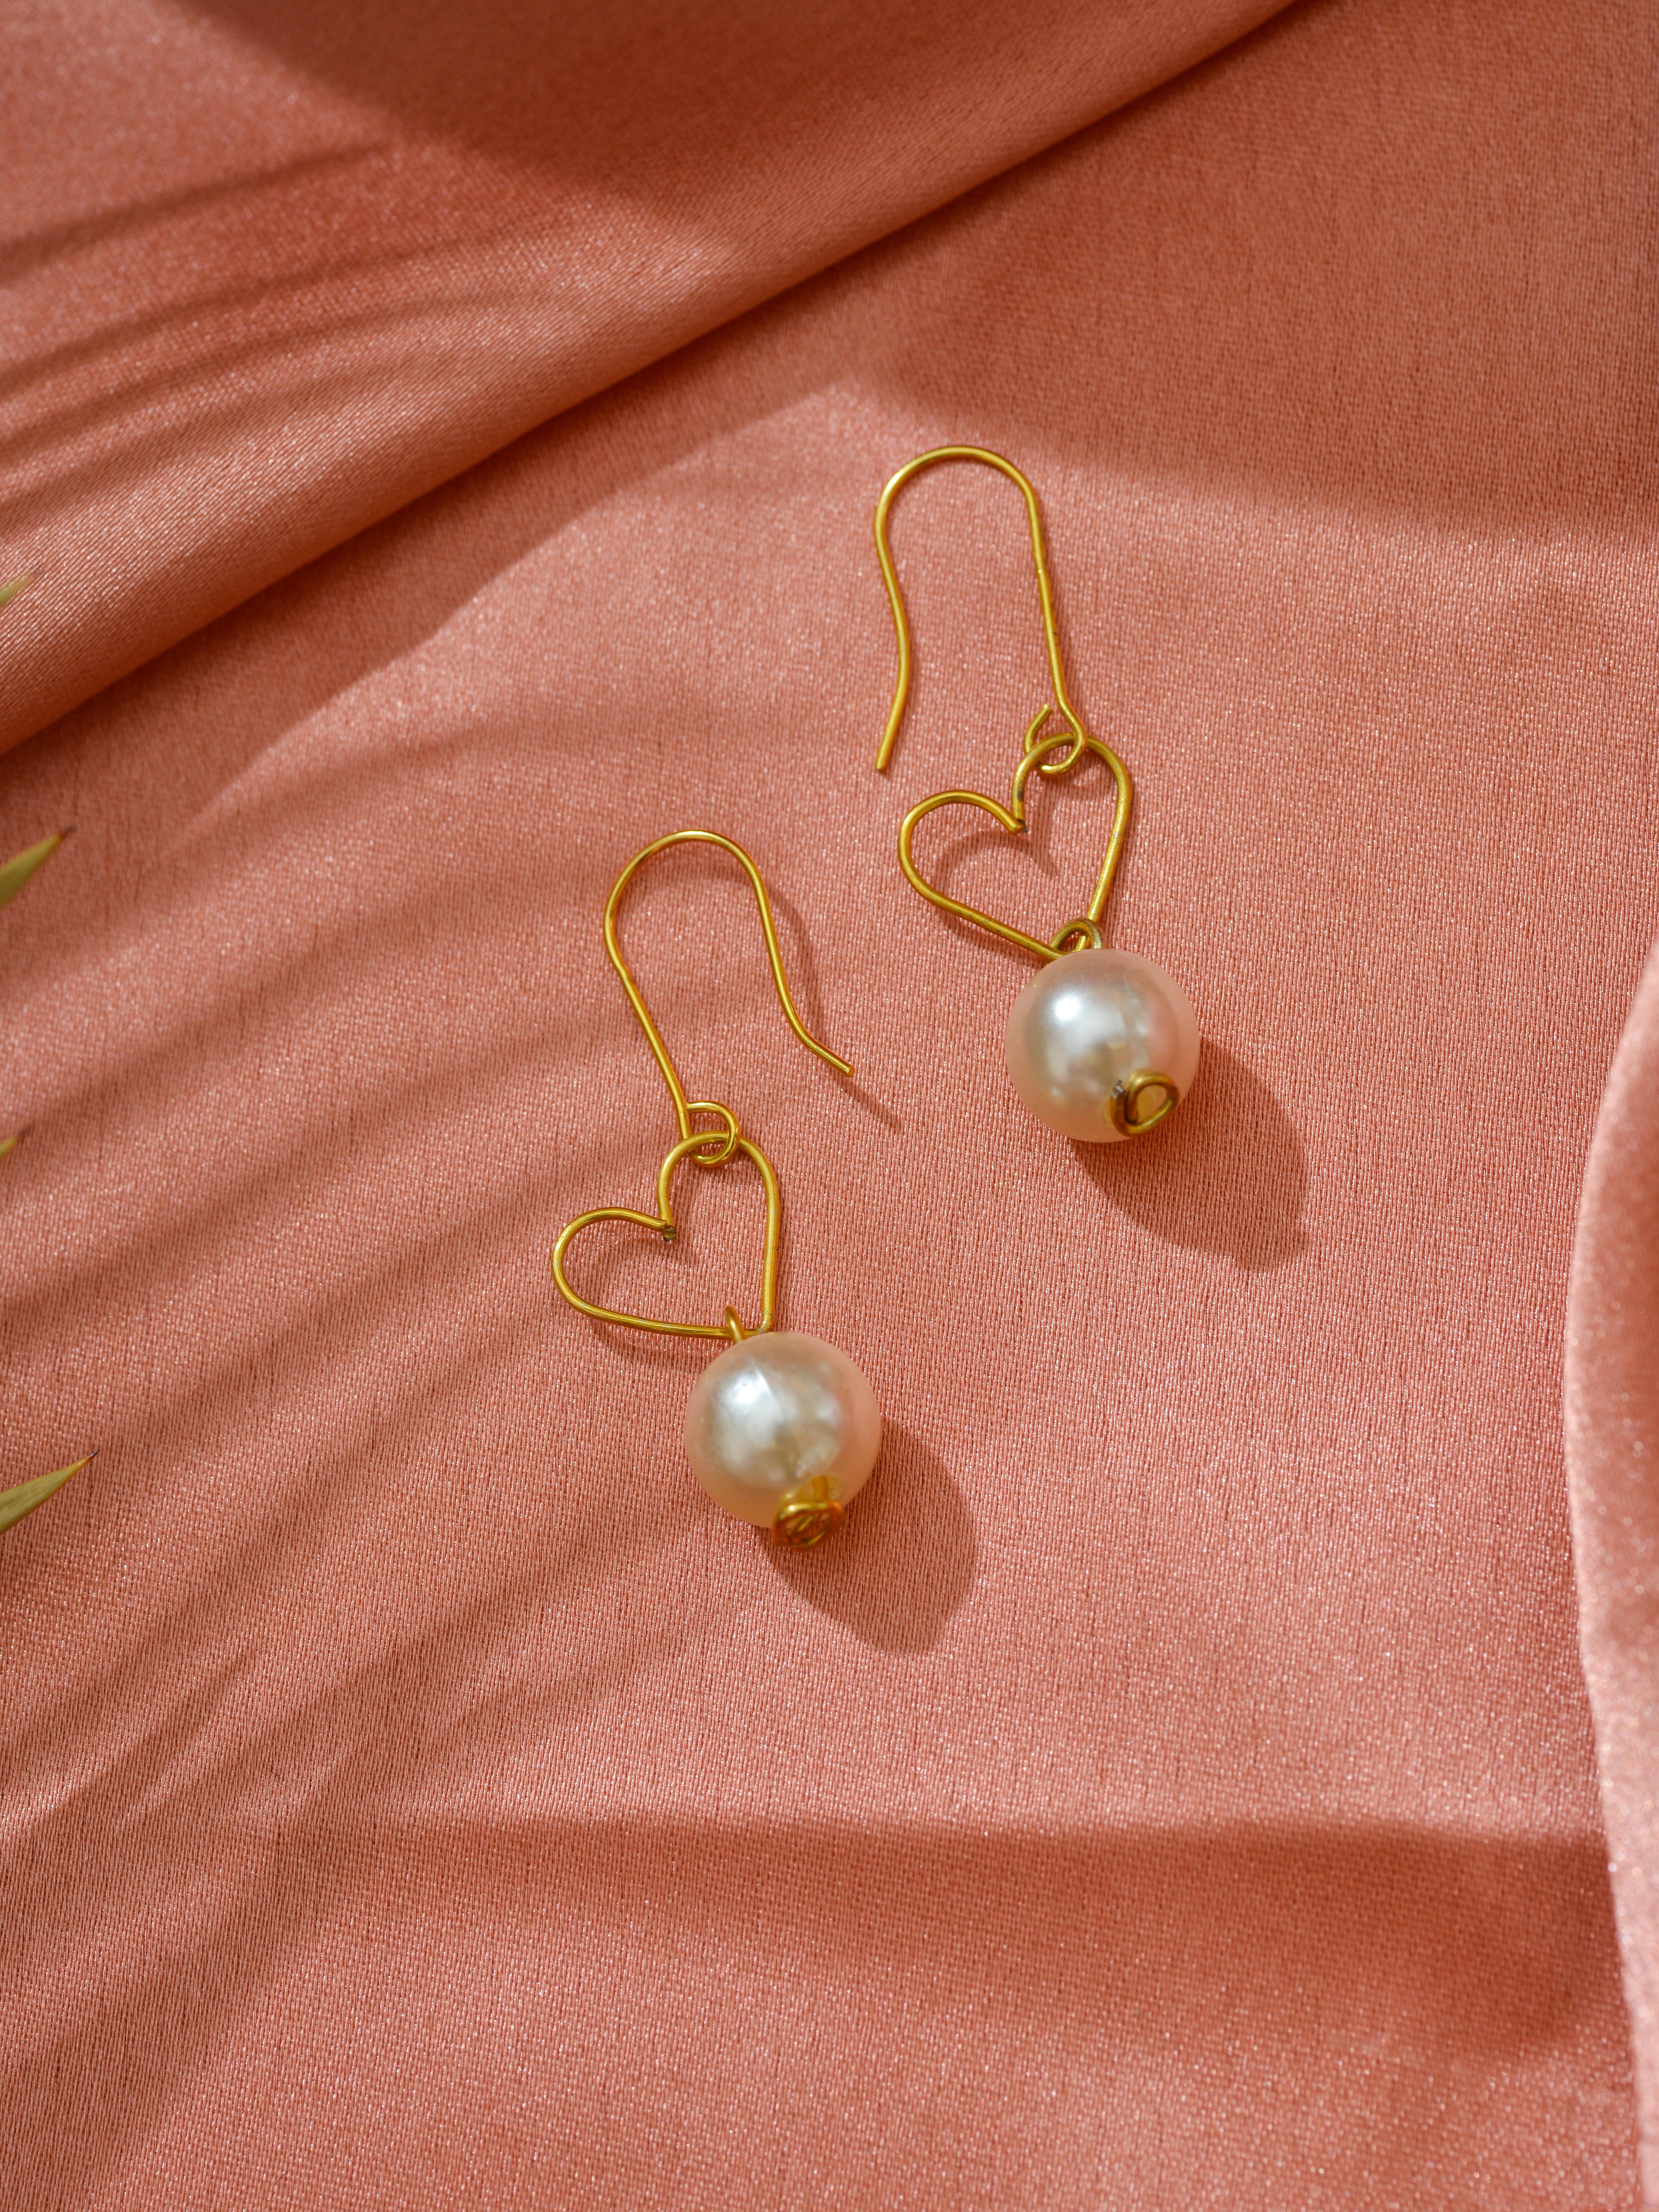 emily in paris pearl earrings